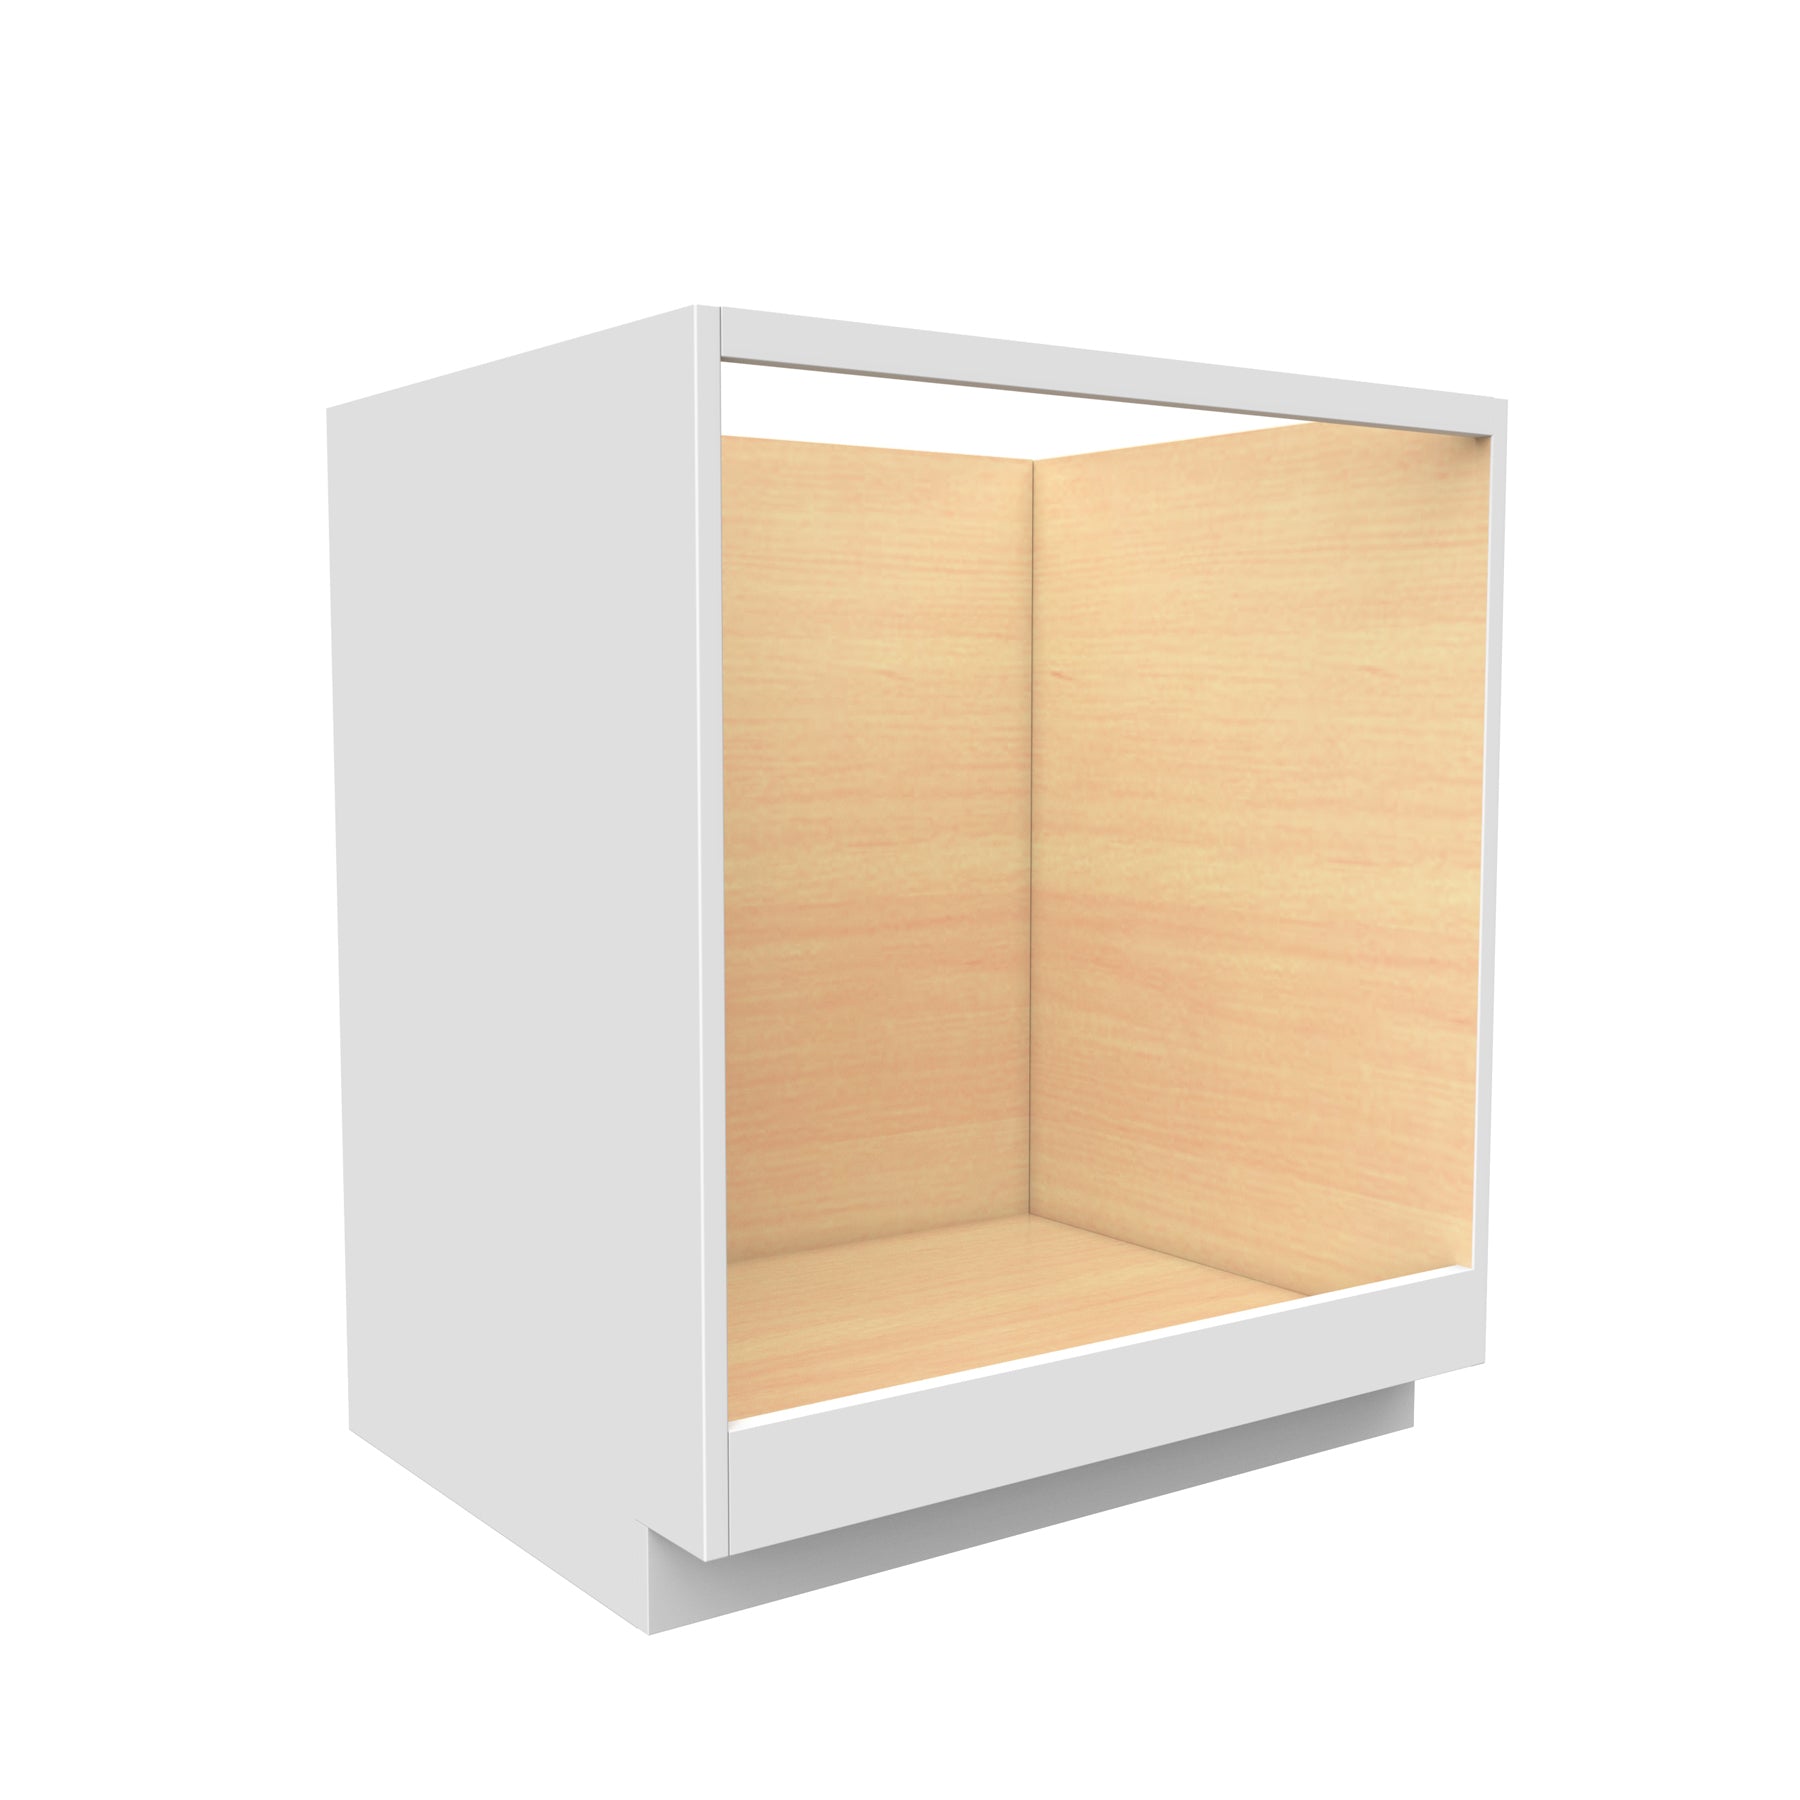 Fashion White - Oven Base Cabinet | 30"W x 34.5"H x 24"D